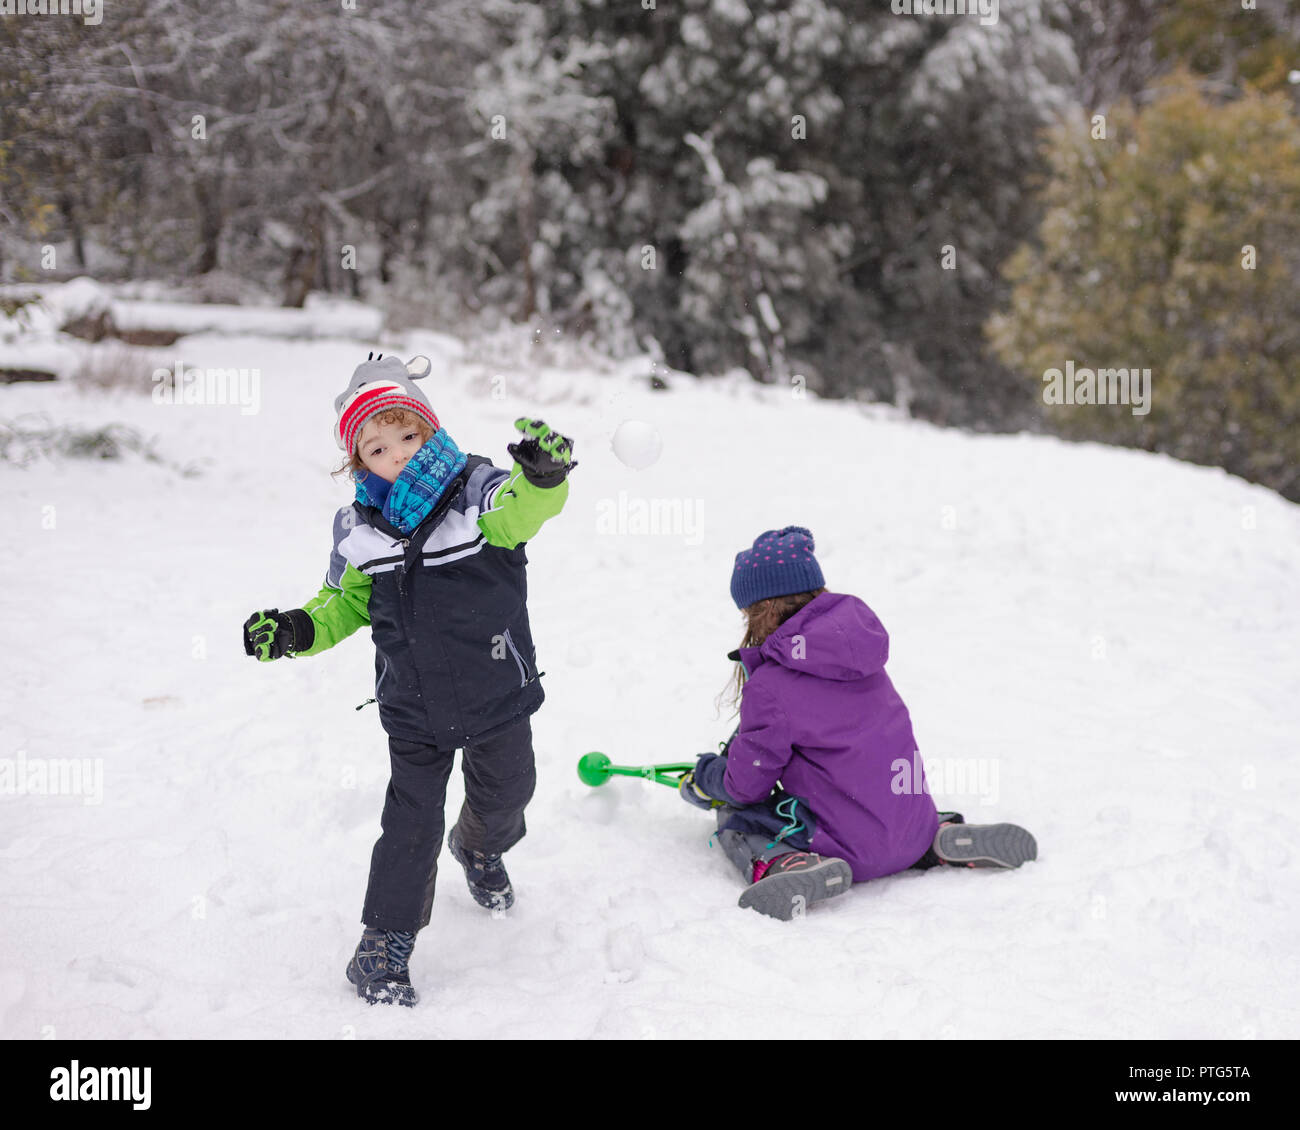 Junge Junge wirft einen Schneeball, während ein junges Mädchen mehr Schneebälle macht Stockfoto